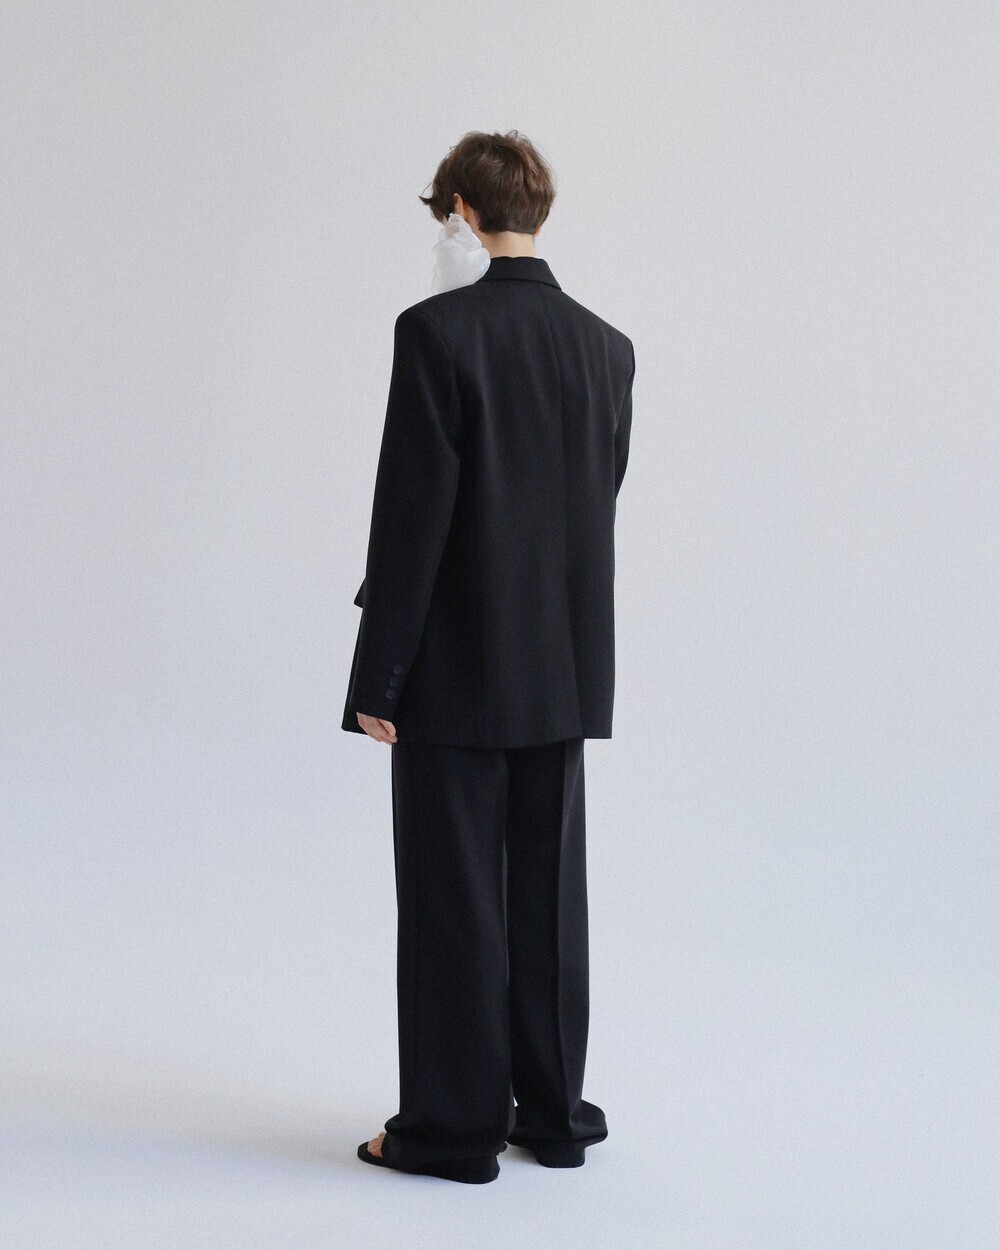 Suit trousers black